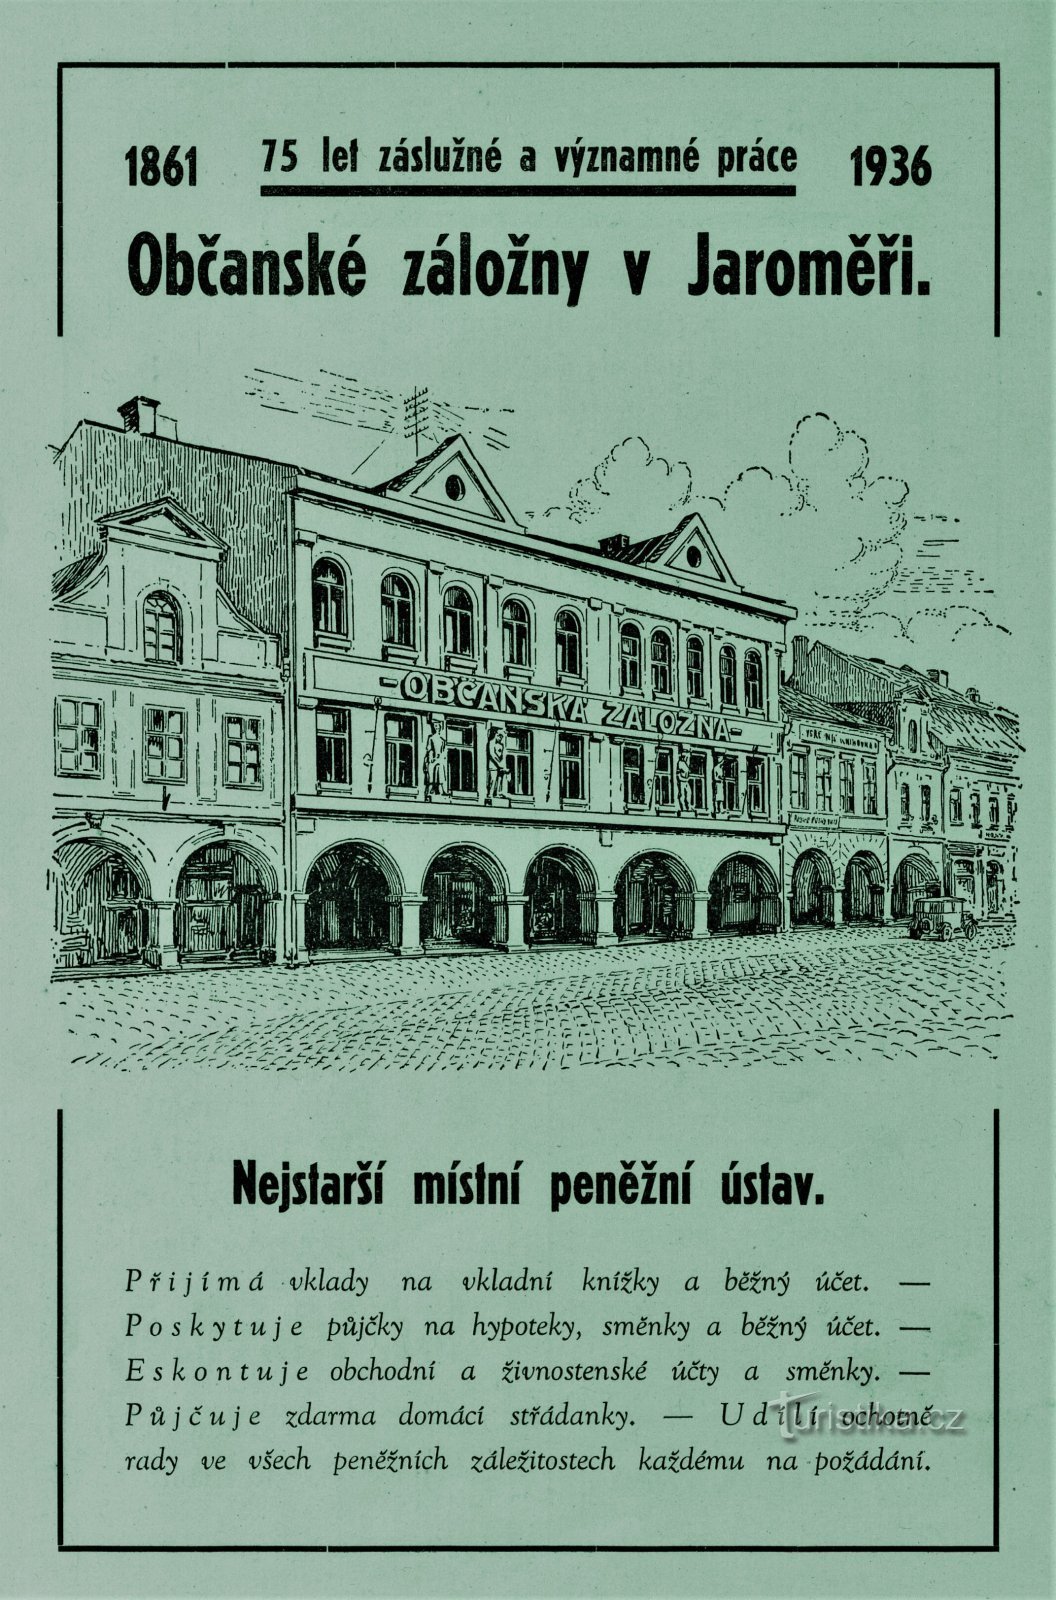 Quảng cáo đương đại của Ngân hàng Tiết kiệm Dân sự ở Jaroměř từ năm 1936